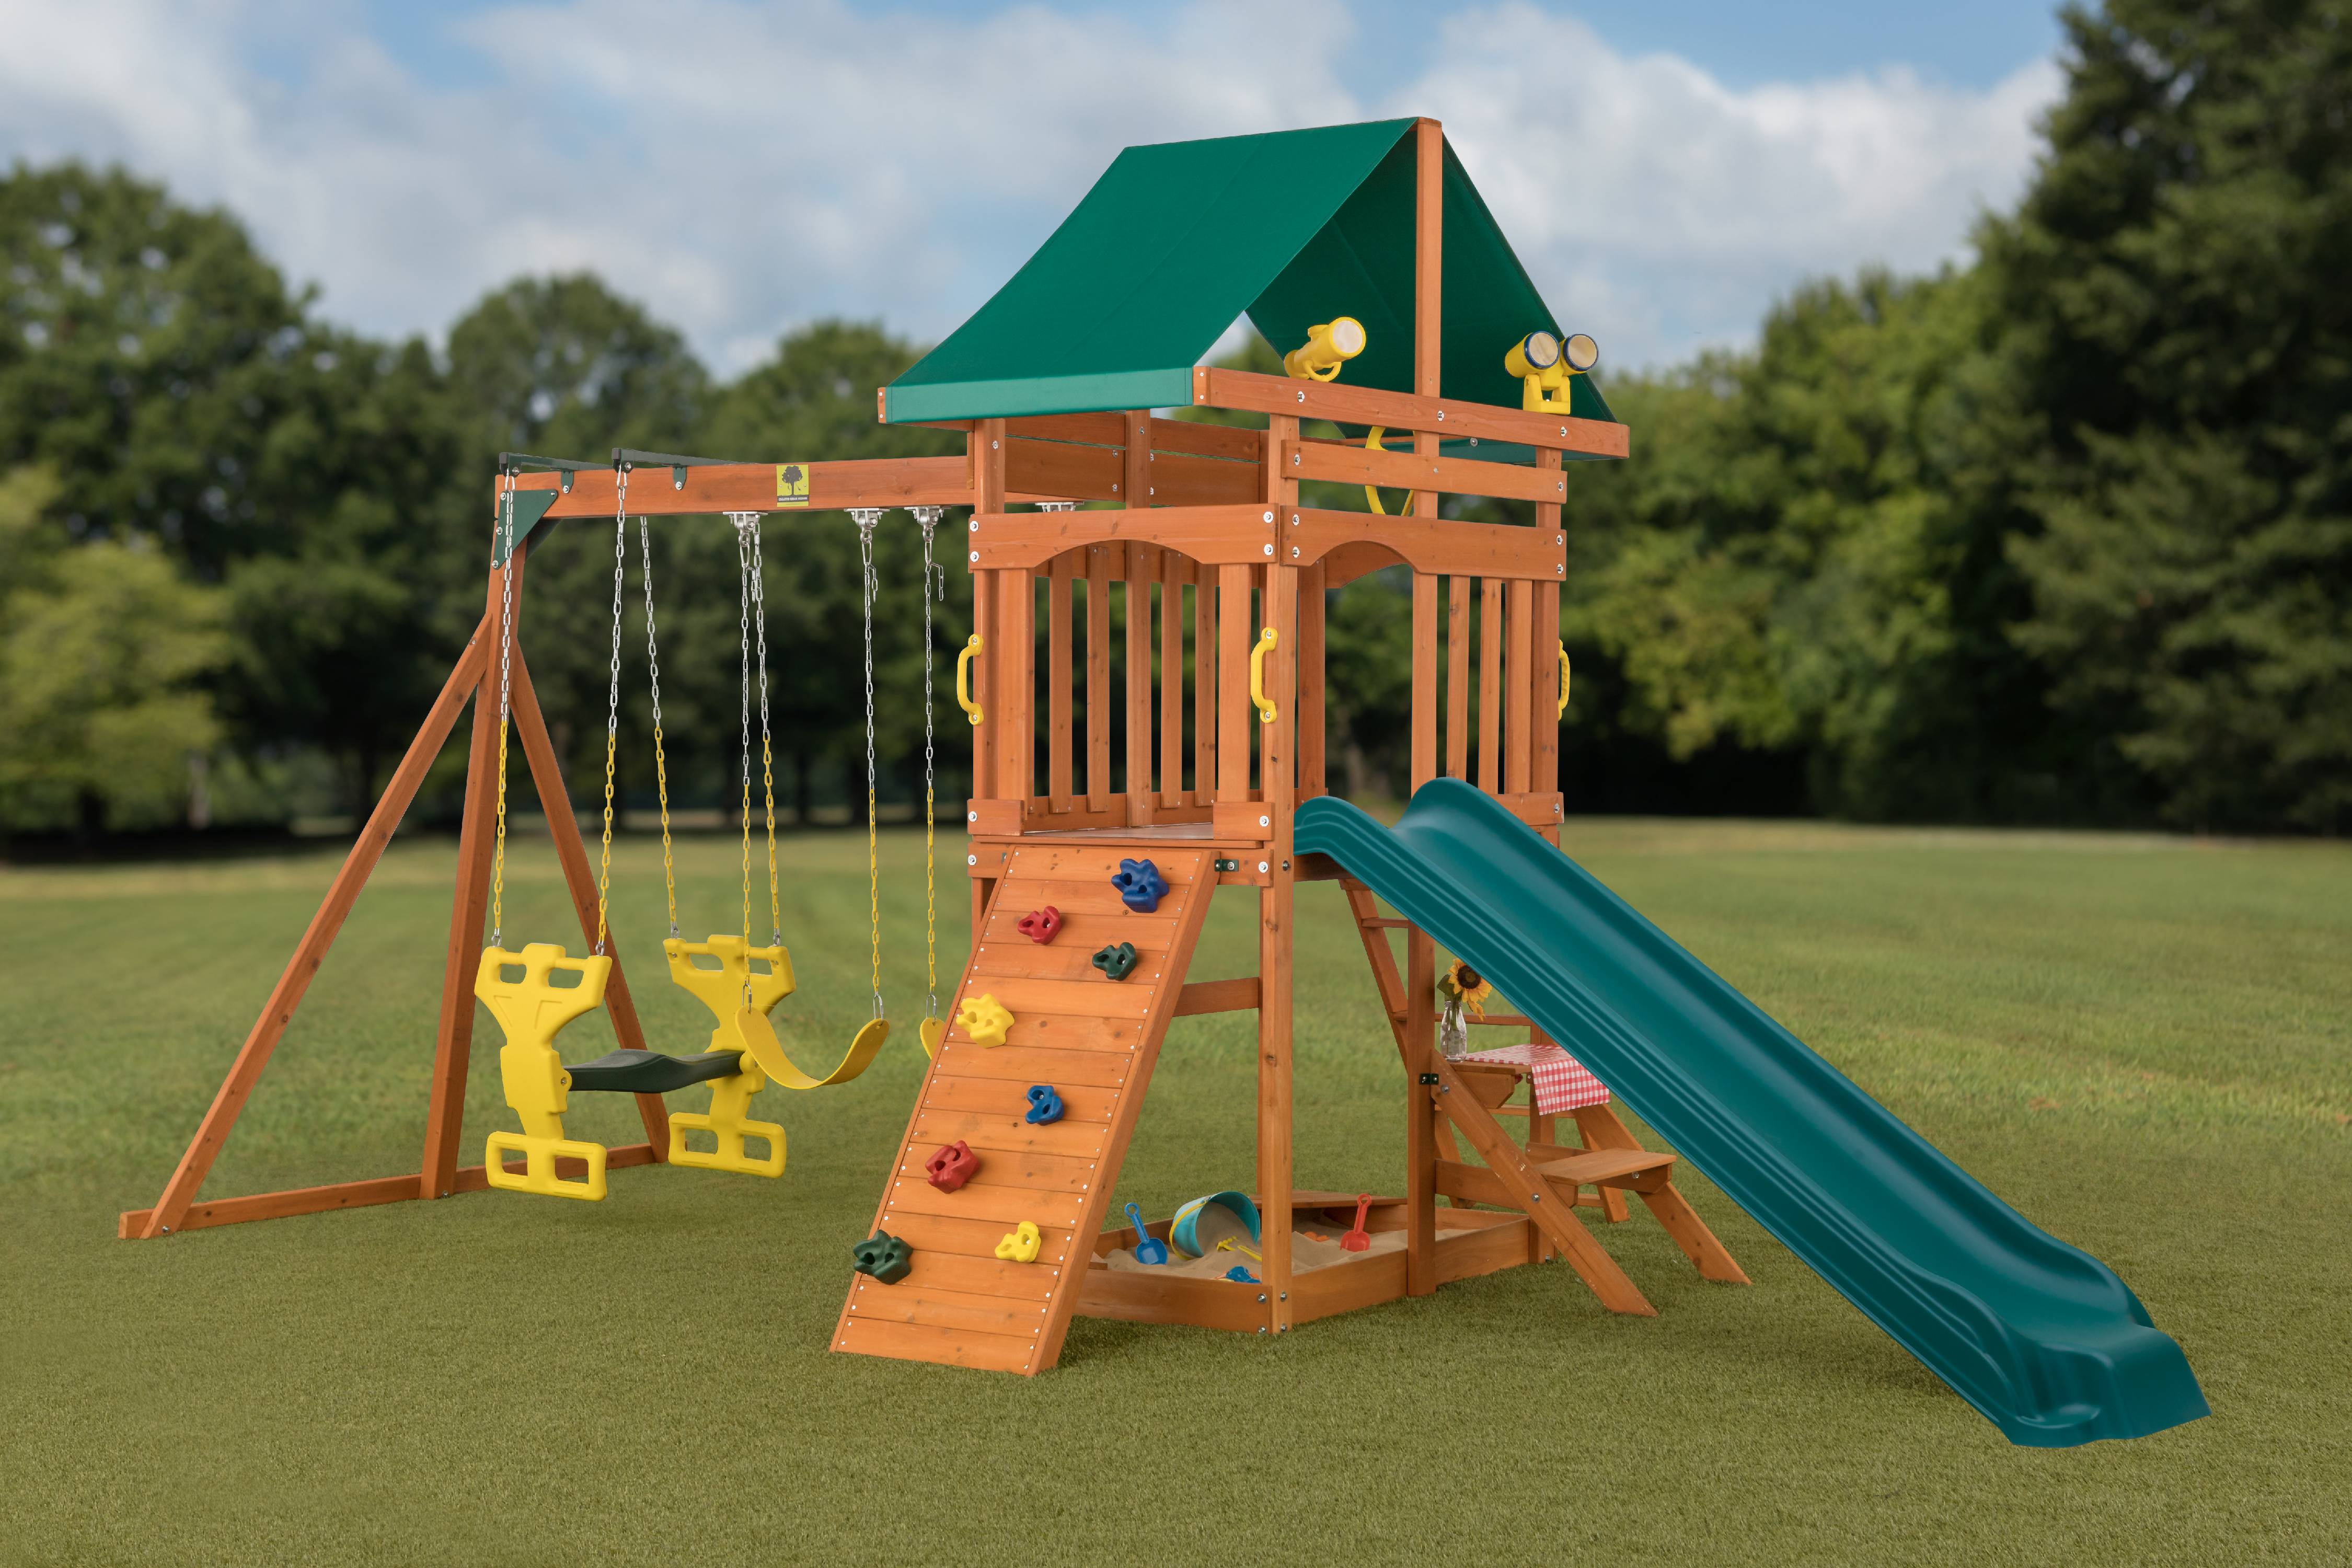 Sky View Cedar Backyard Playset | W: 17'10" D: 9'4" H: 9'9" | w/2-Person Glider & 2 Belt Swings | Binoculars, Steering Wheel & Telescope | Kids Age 3-12 | ASTM Standards | 10-Year Warranty on Wood - image 2 of 13